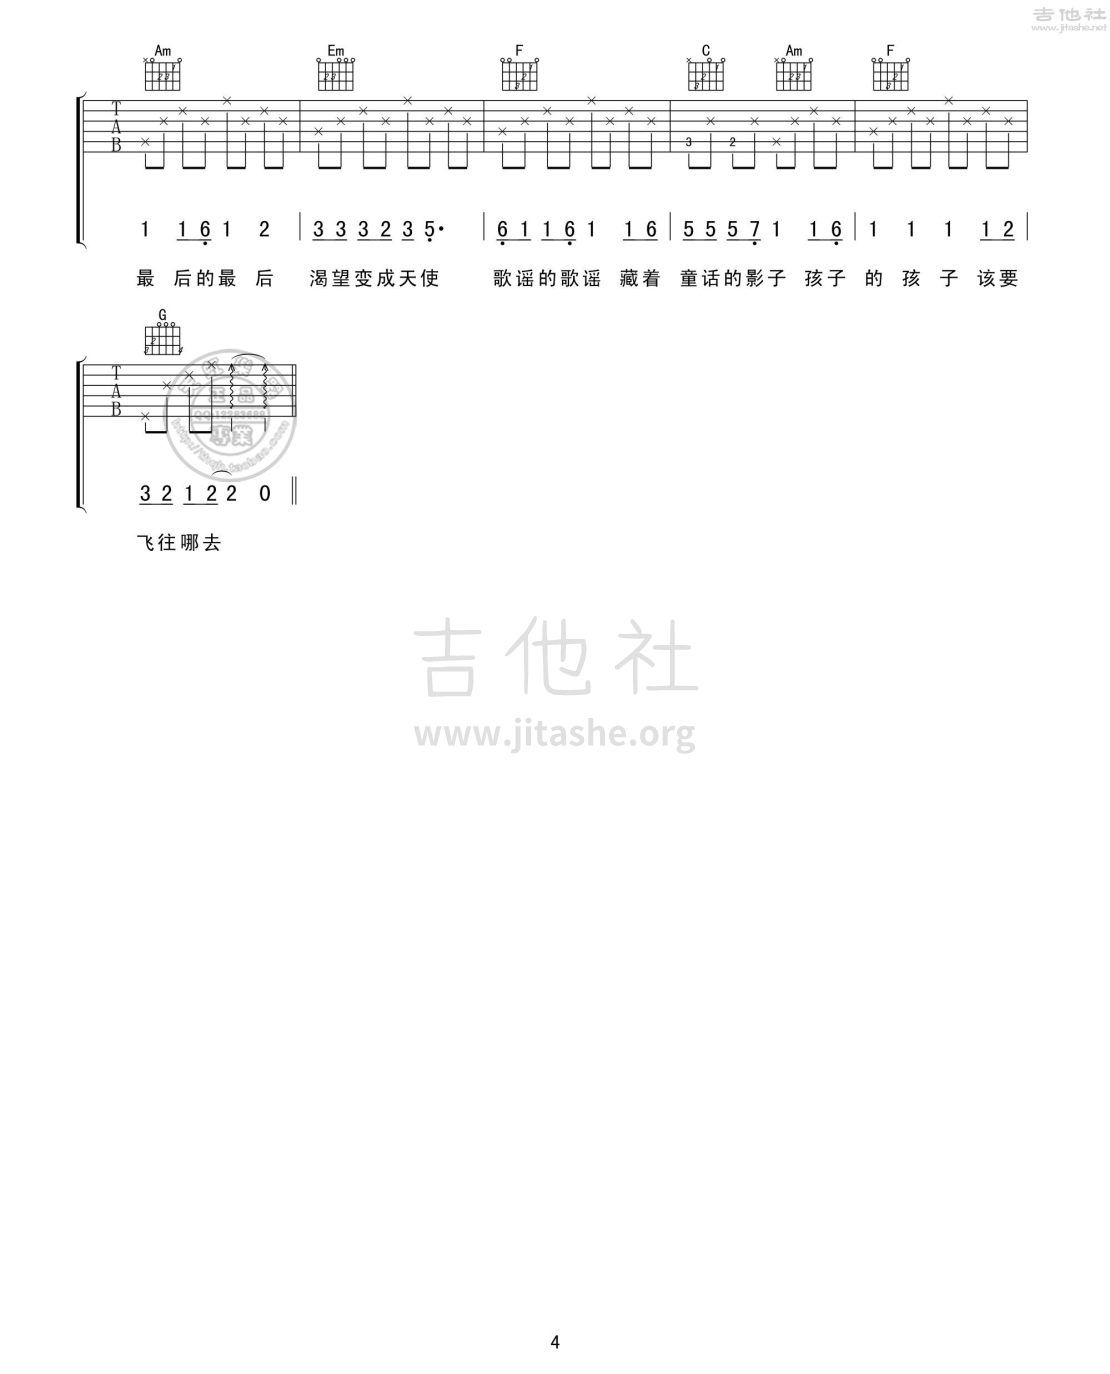 【毕业季】北京东路的日子 Clozzz吉他指弹谱_哔哩哔哩_bilibili